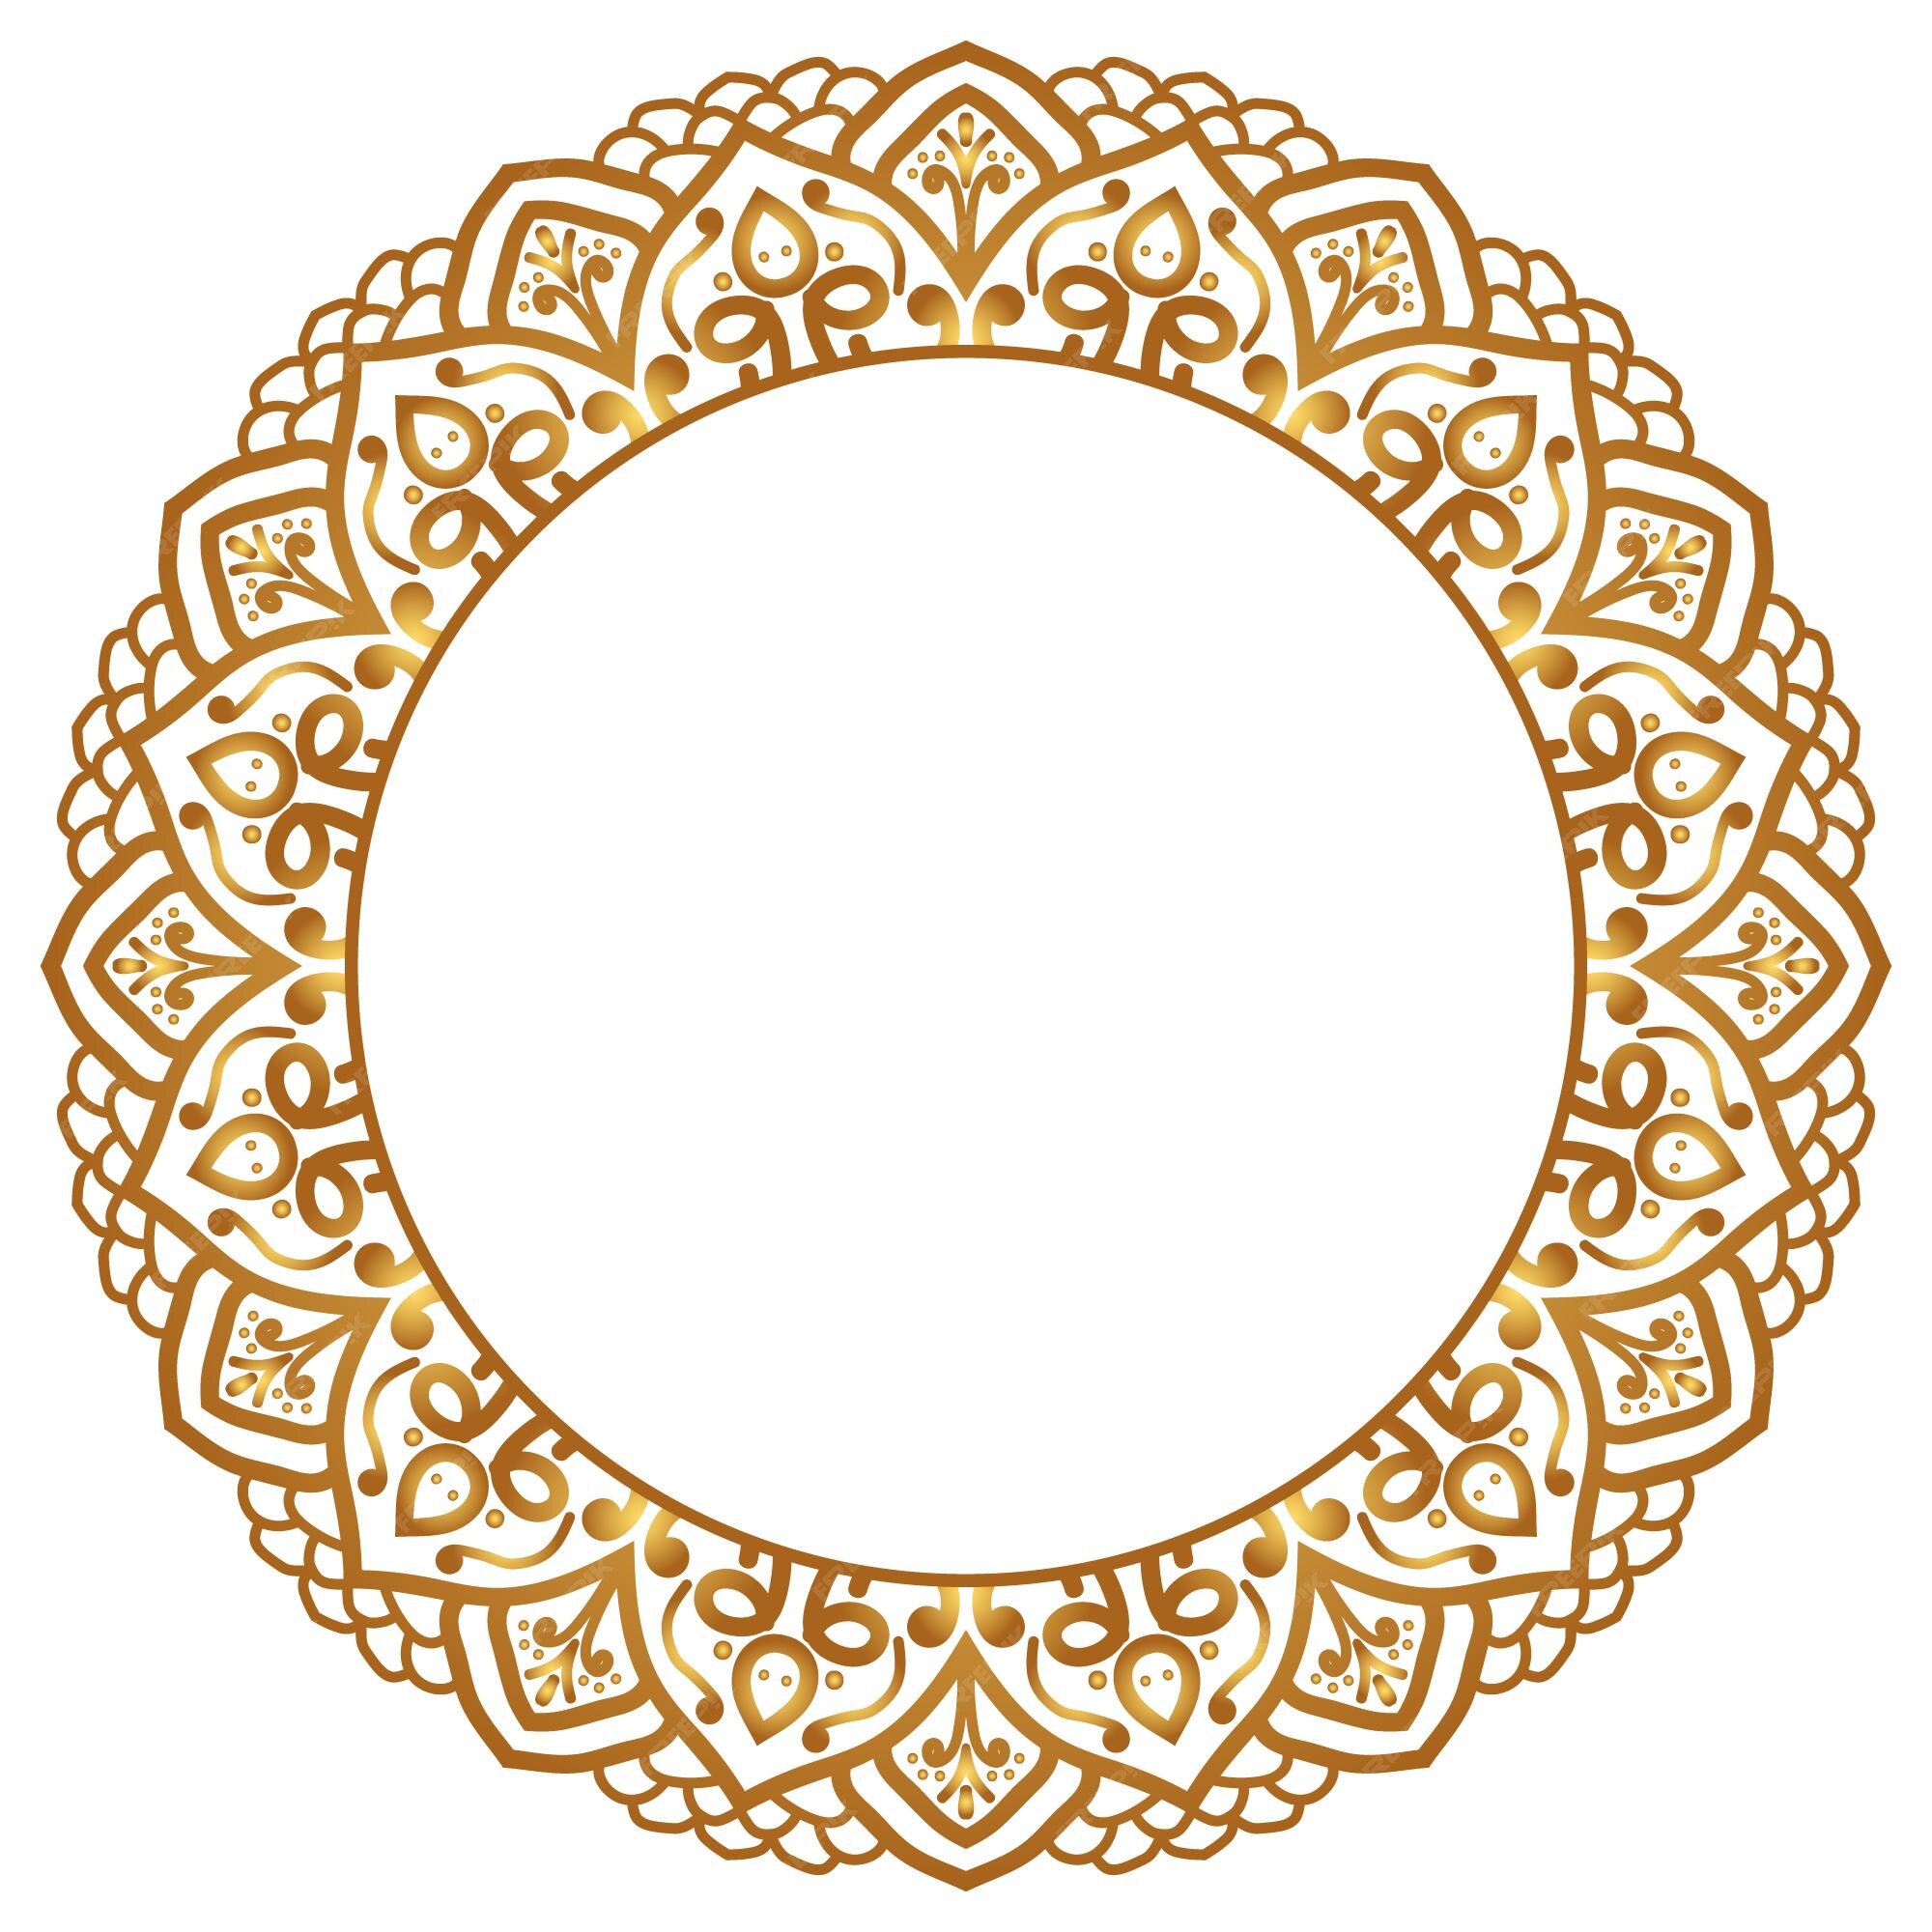 Sự kết hợp hoàn hảo giữa nền hoa văn mandala sang trọng và khung vòng tròn màu vàng tạo nên bức hình nền cực kỳ trang trọng và thu hút mọi ánh nhìn.